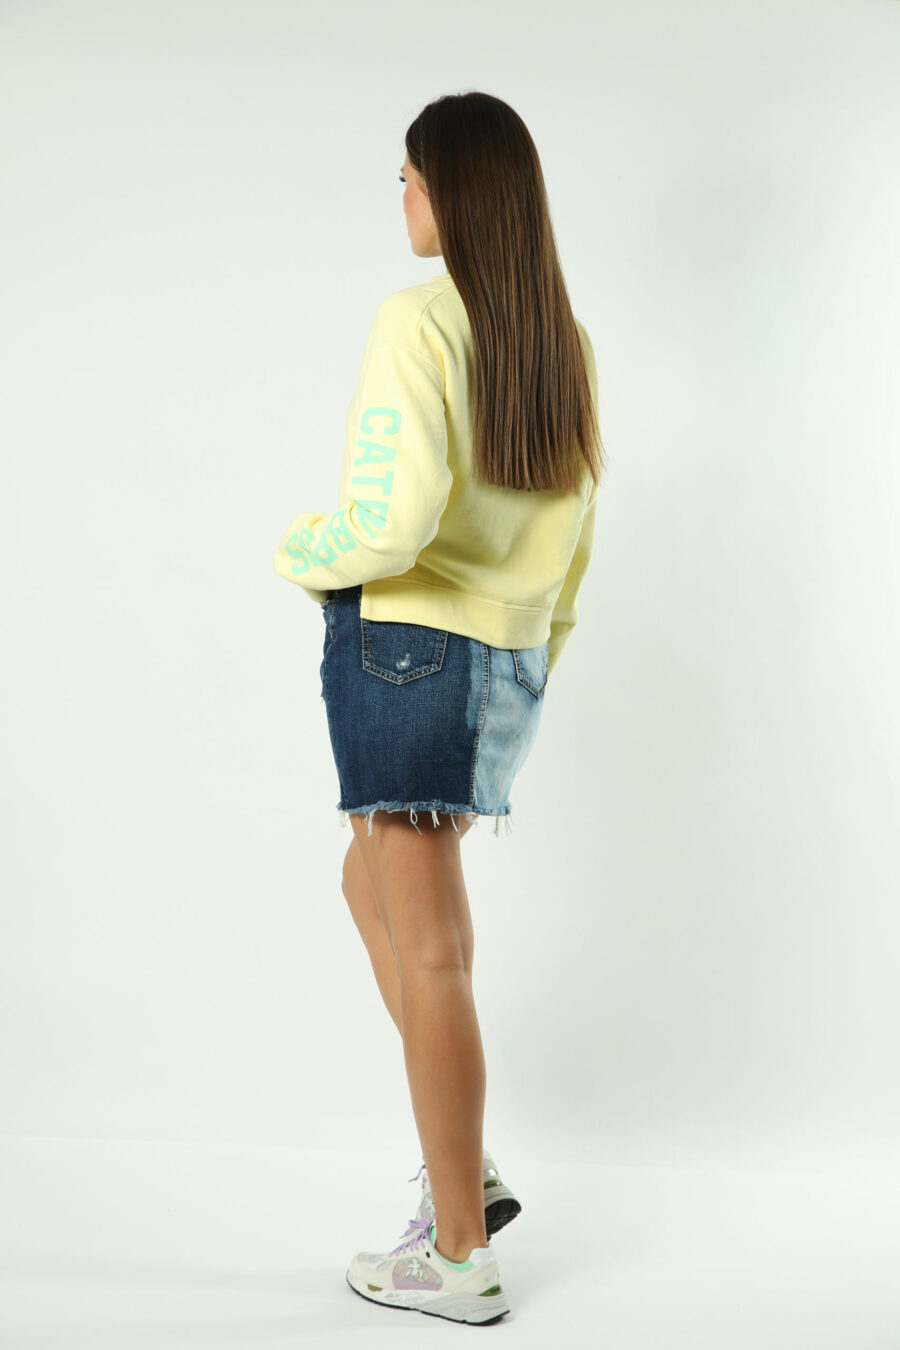 Sweatshirt amarela com maxilogo verde e texto nas mangas - 8052134554463 5